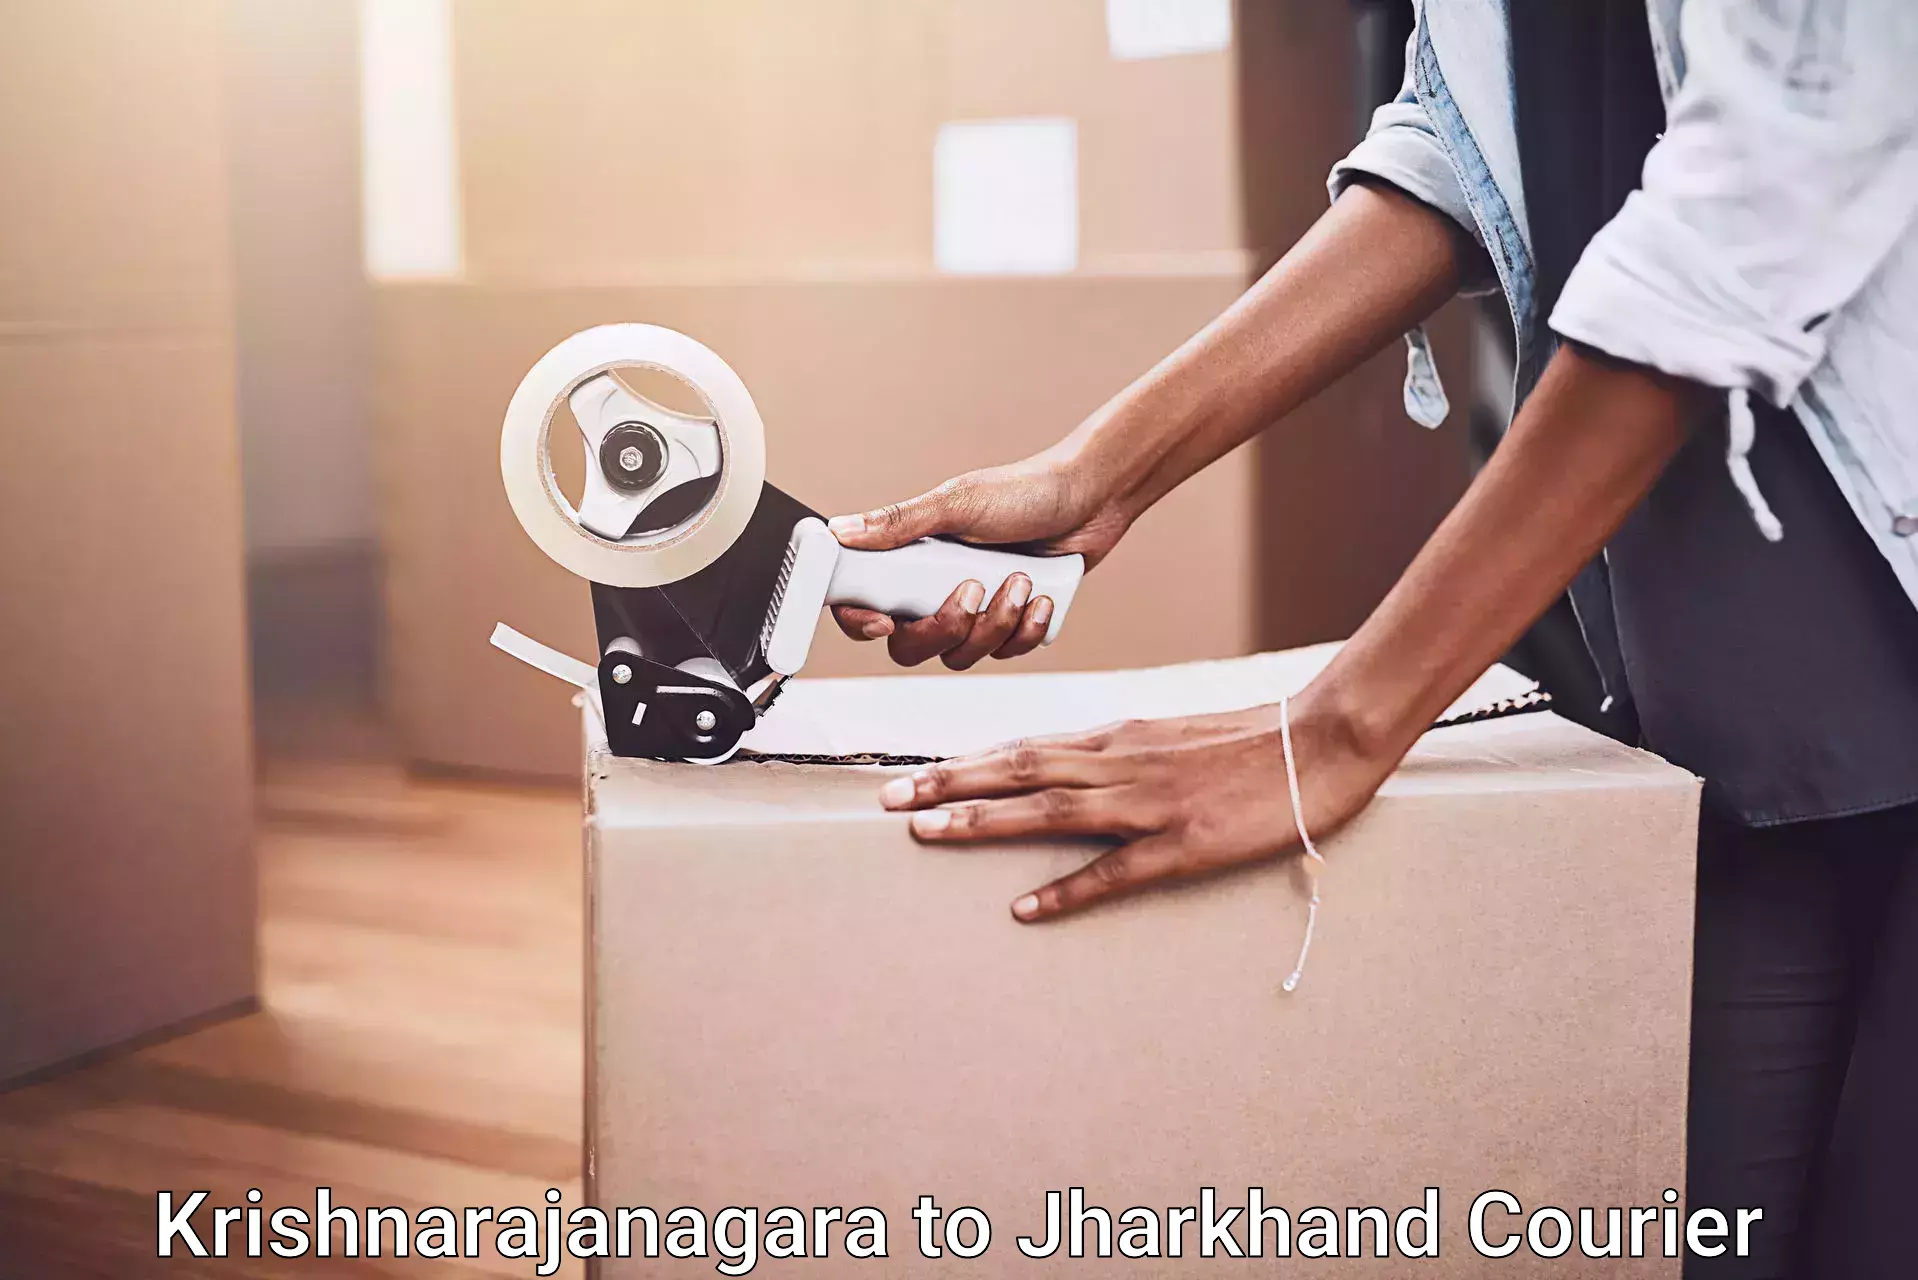 Furniture moving experts in Krishnarajanagara to Tandwa